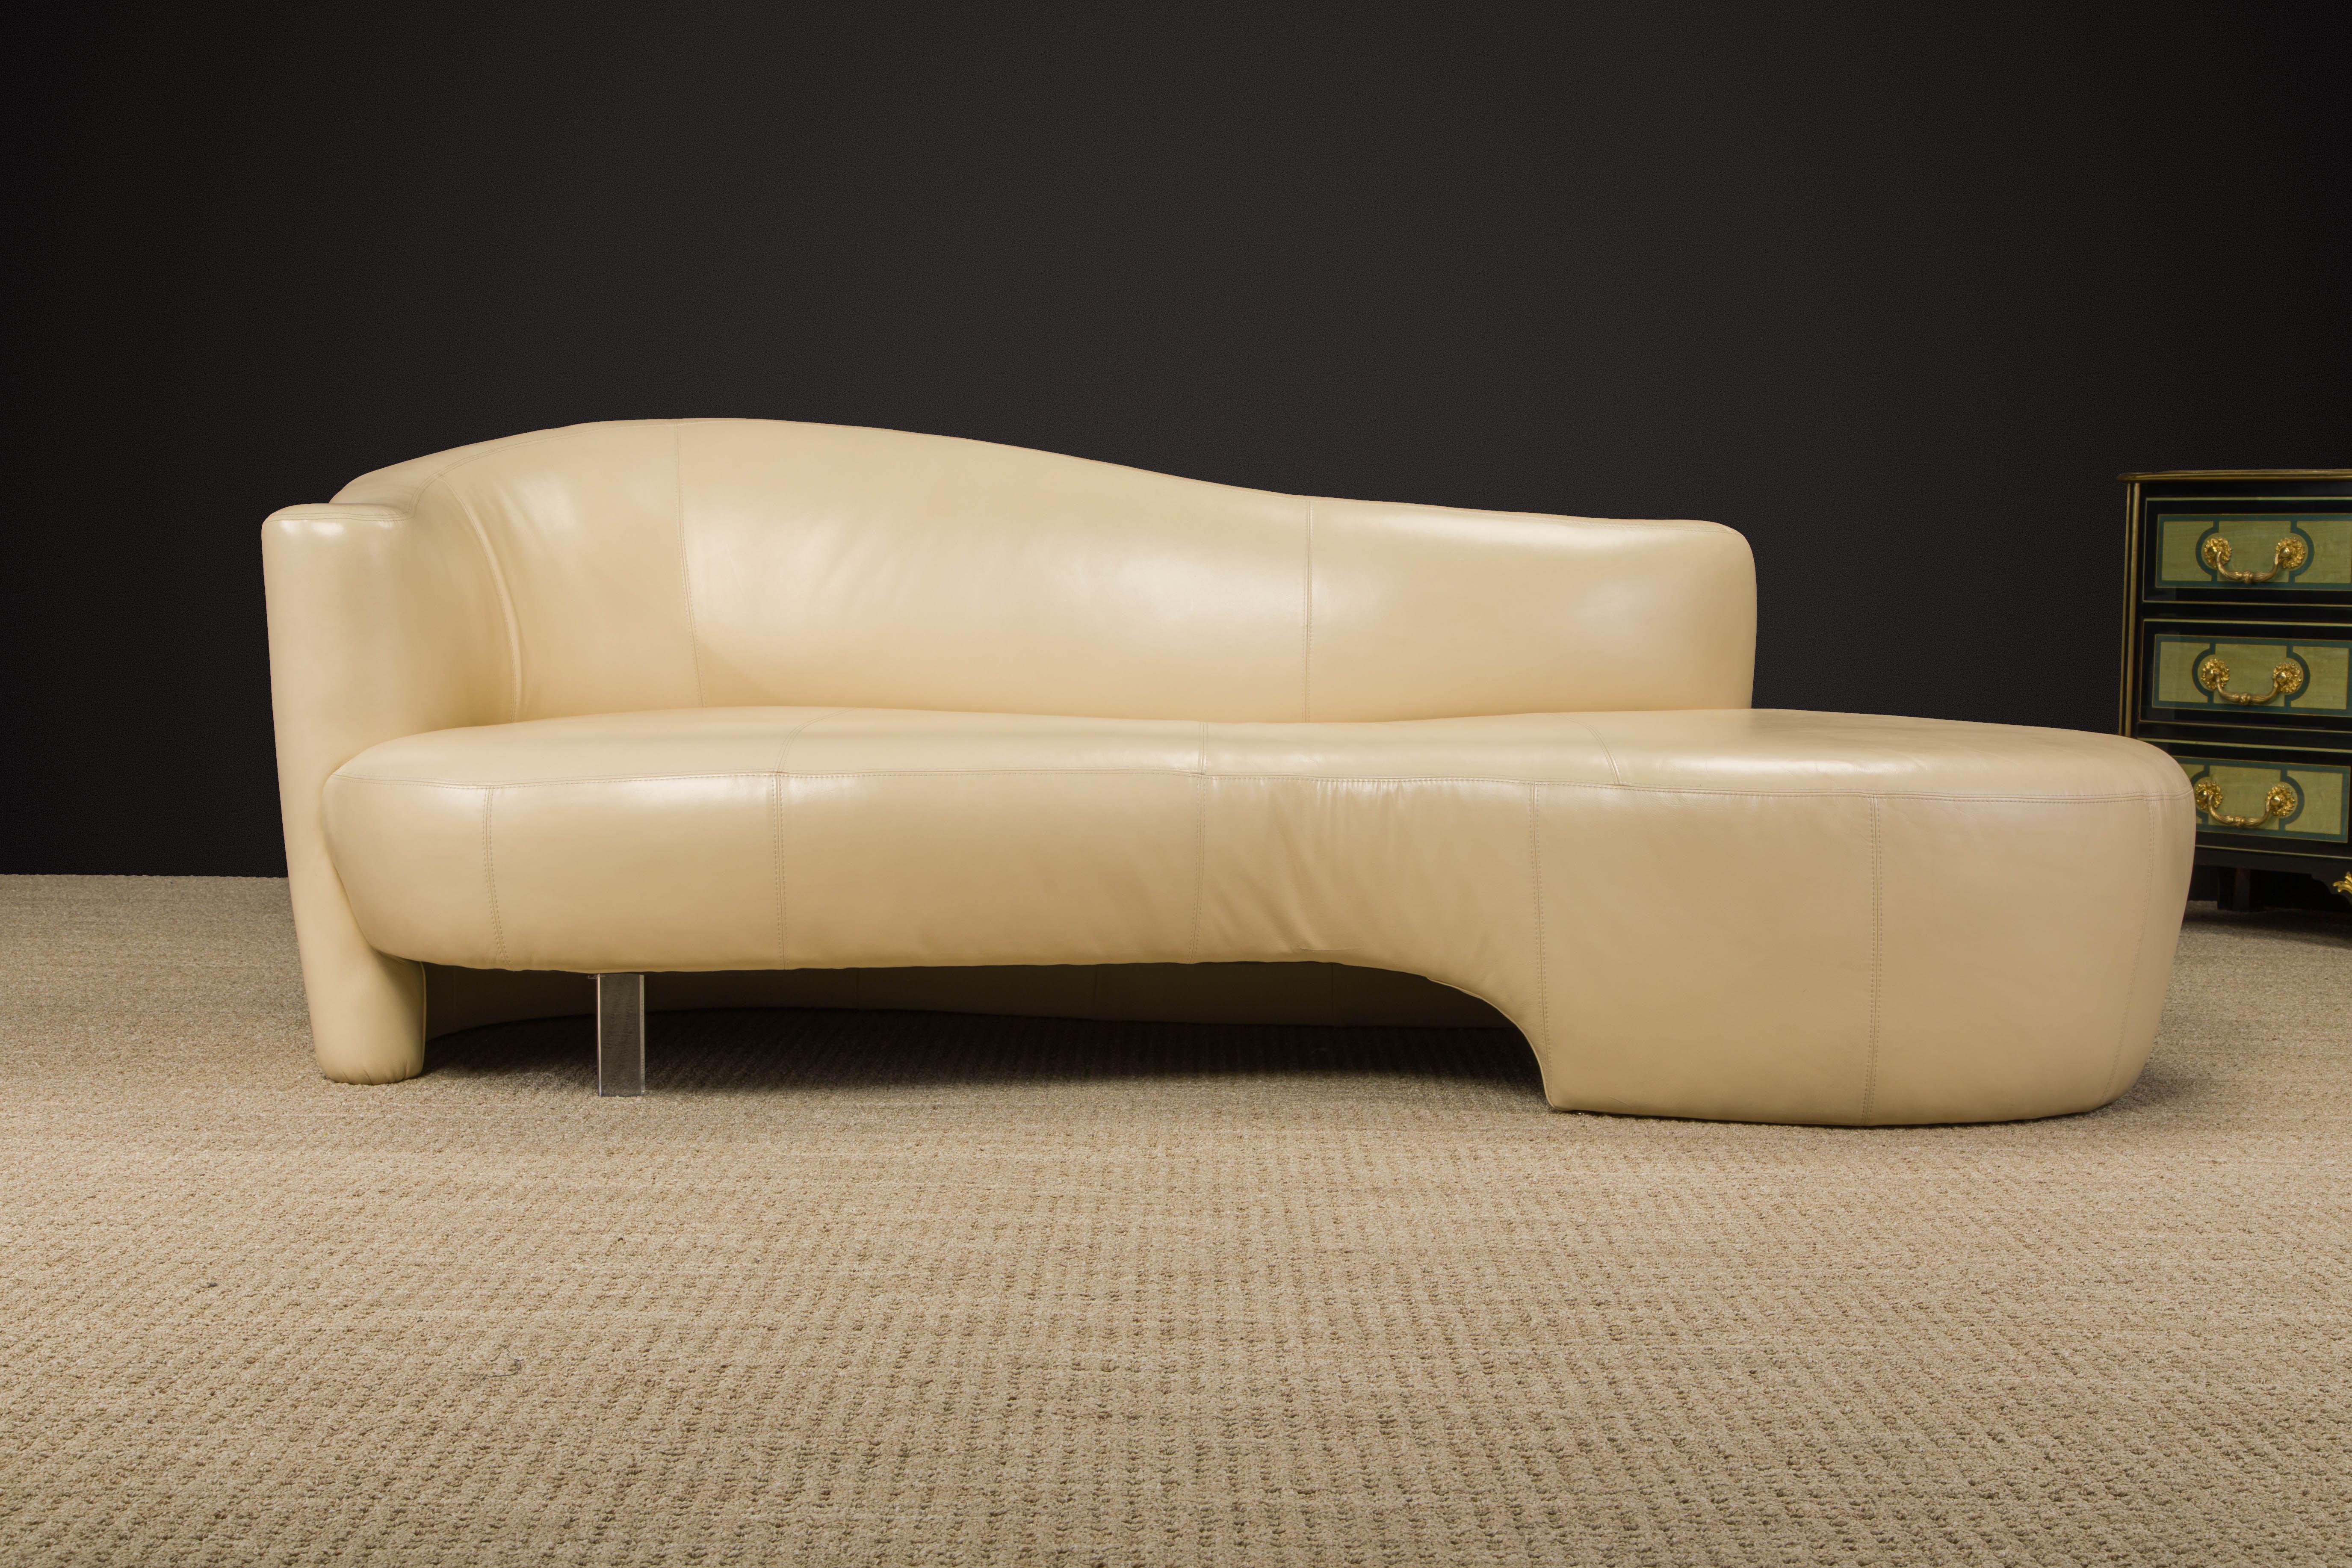 Ce magnifique canapé post-moderne de Weiman, tout en courbes et en fluidité, est en cuir souple et luxueux de couleur beige, présente un seul pied en lucite et est signé en dessous d'un Label Weiman.  

Conçu par Robert L. Ebel et produit par Wieman